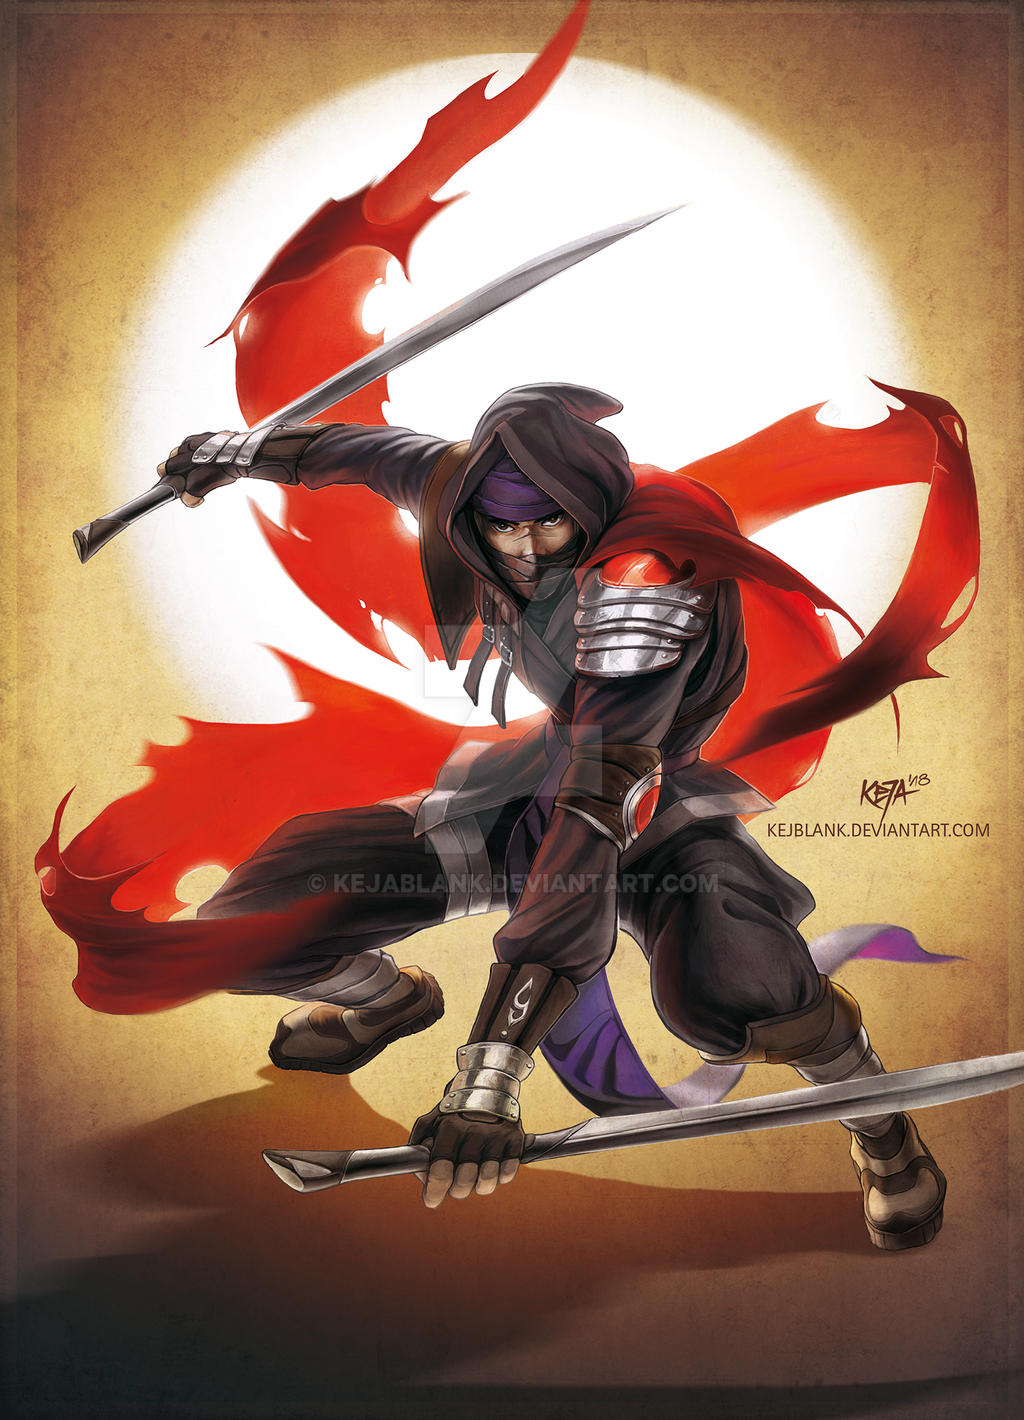 Ninja Assassin by Zubair273 on DeviantArt